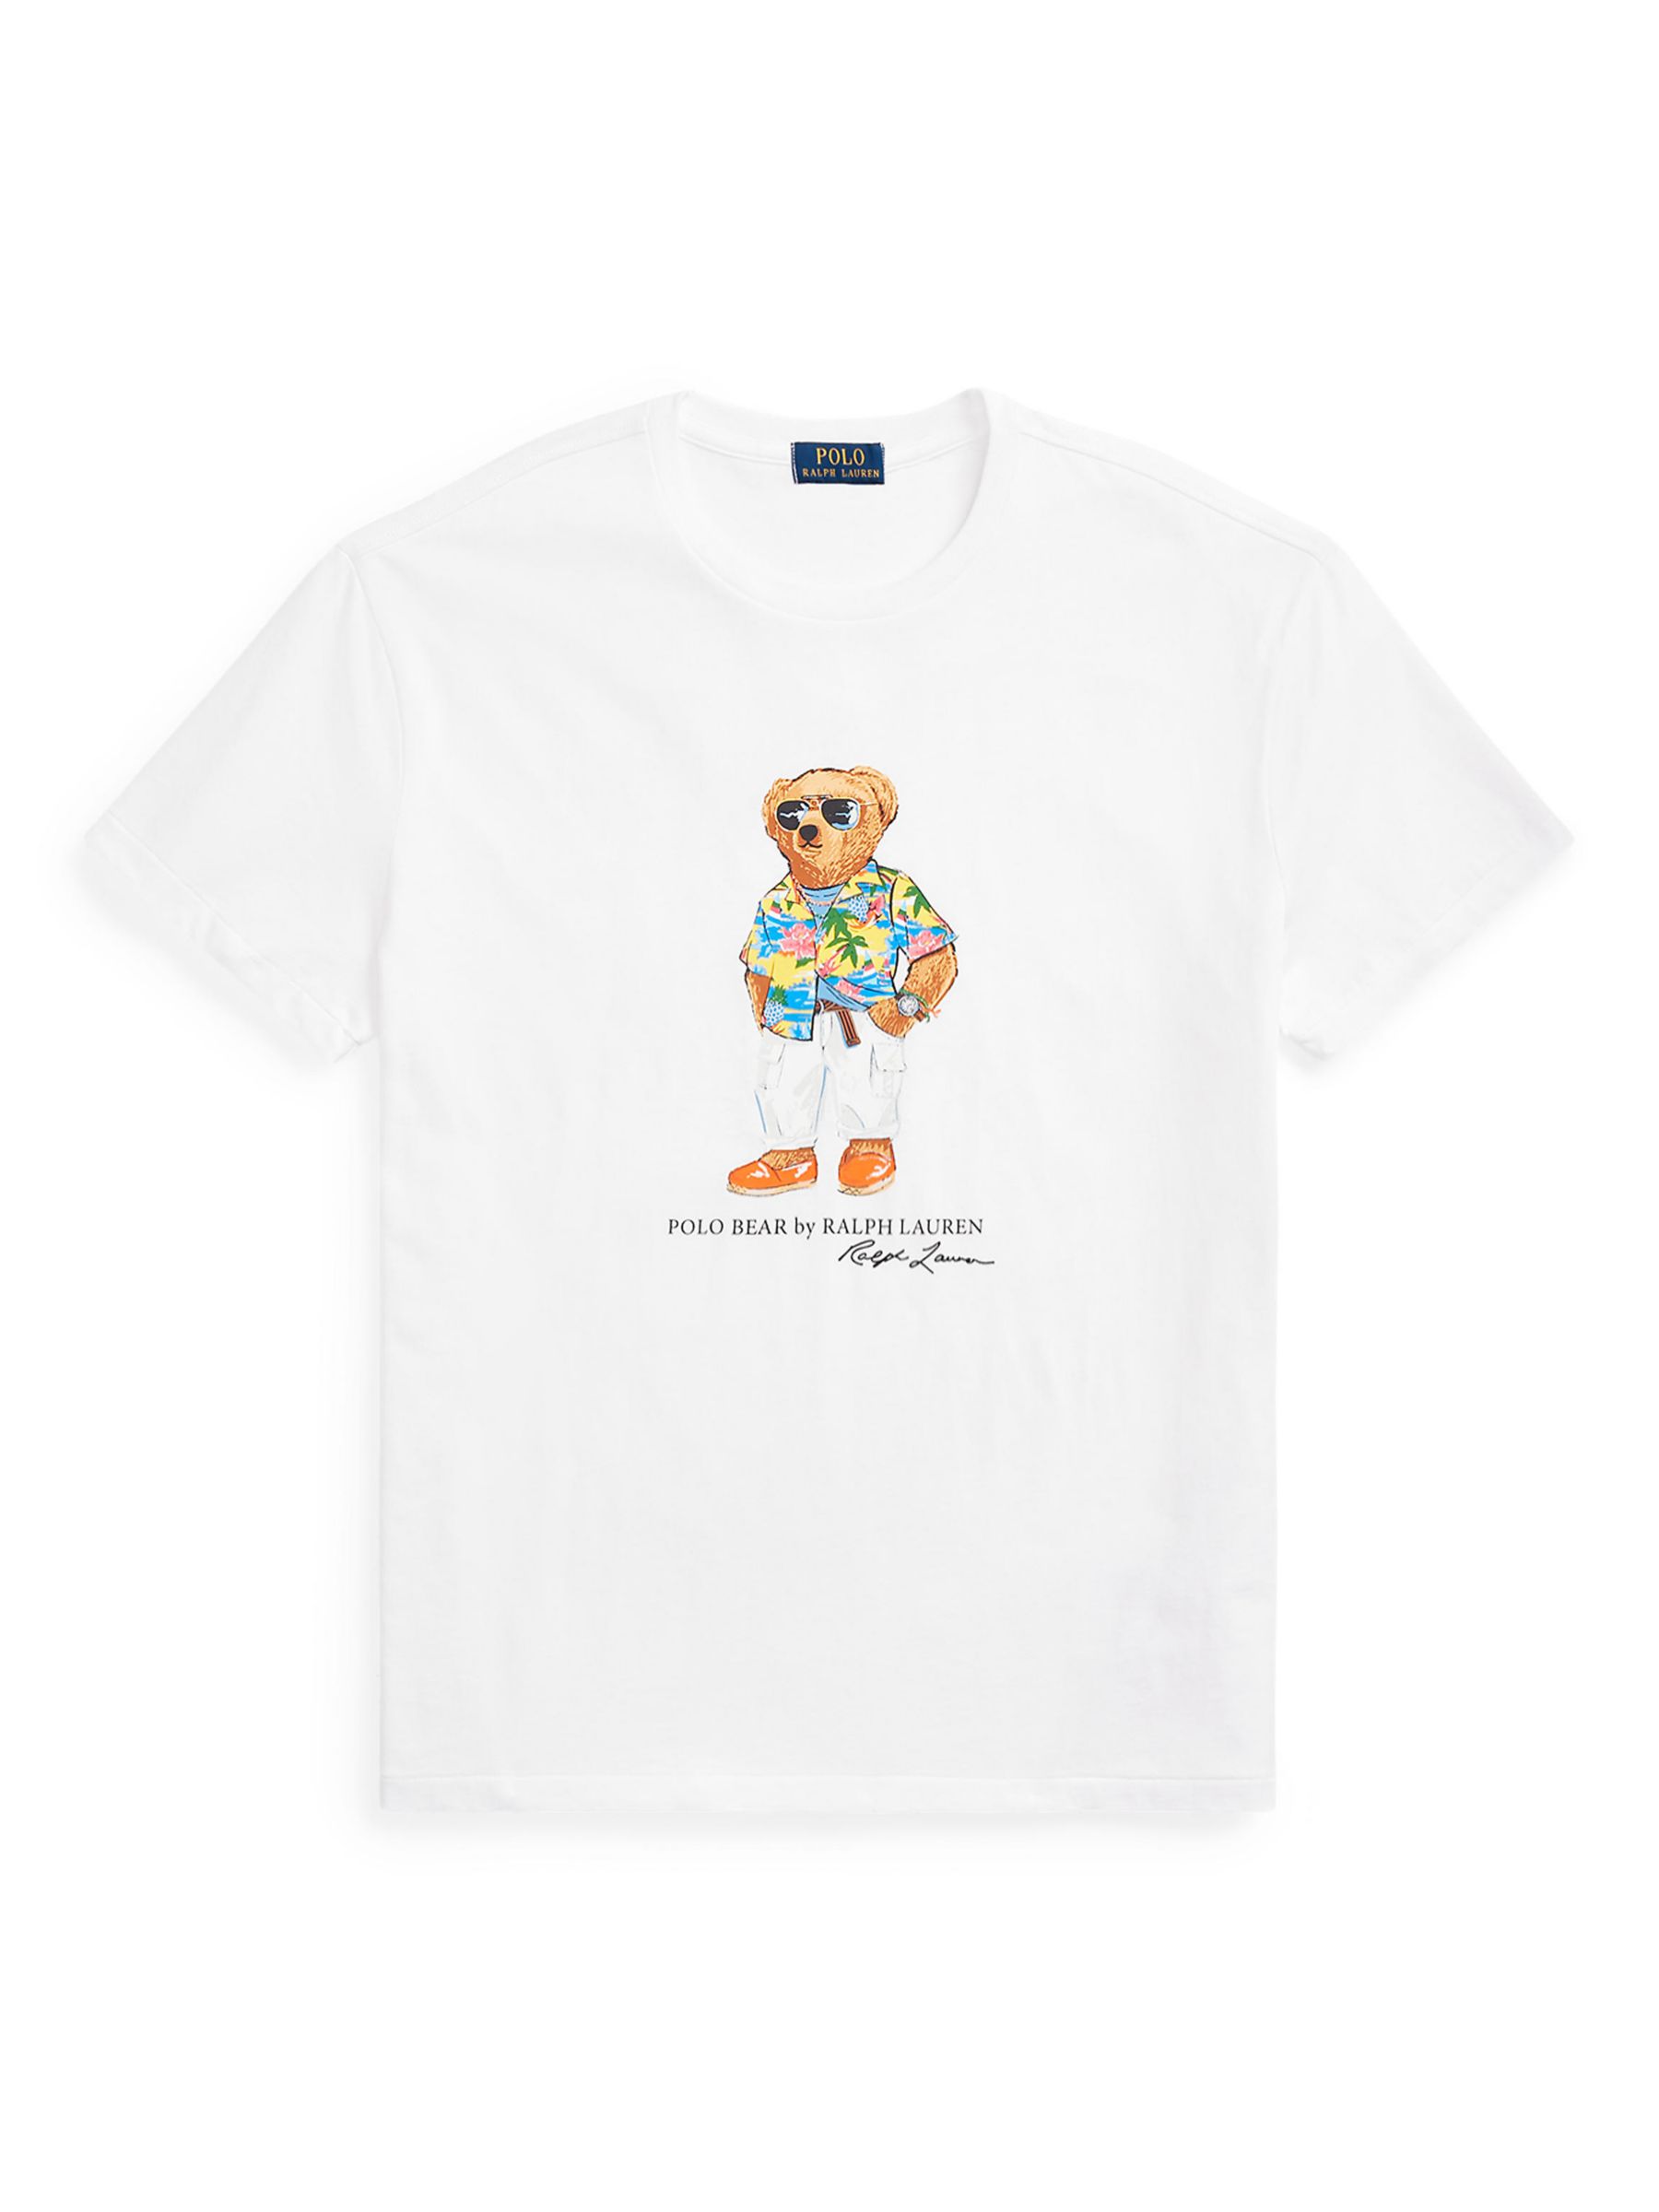 Buy Ralph Lauren Polo Bear Jersey T-Shirt Online at johnlewis.com